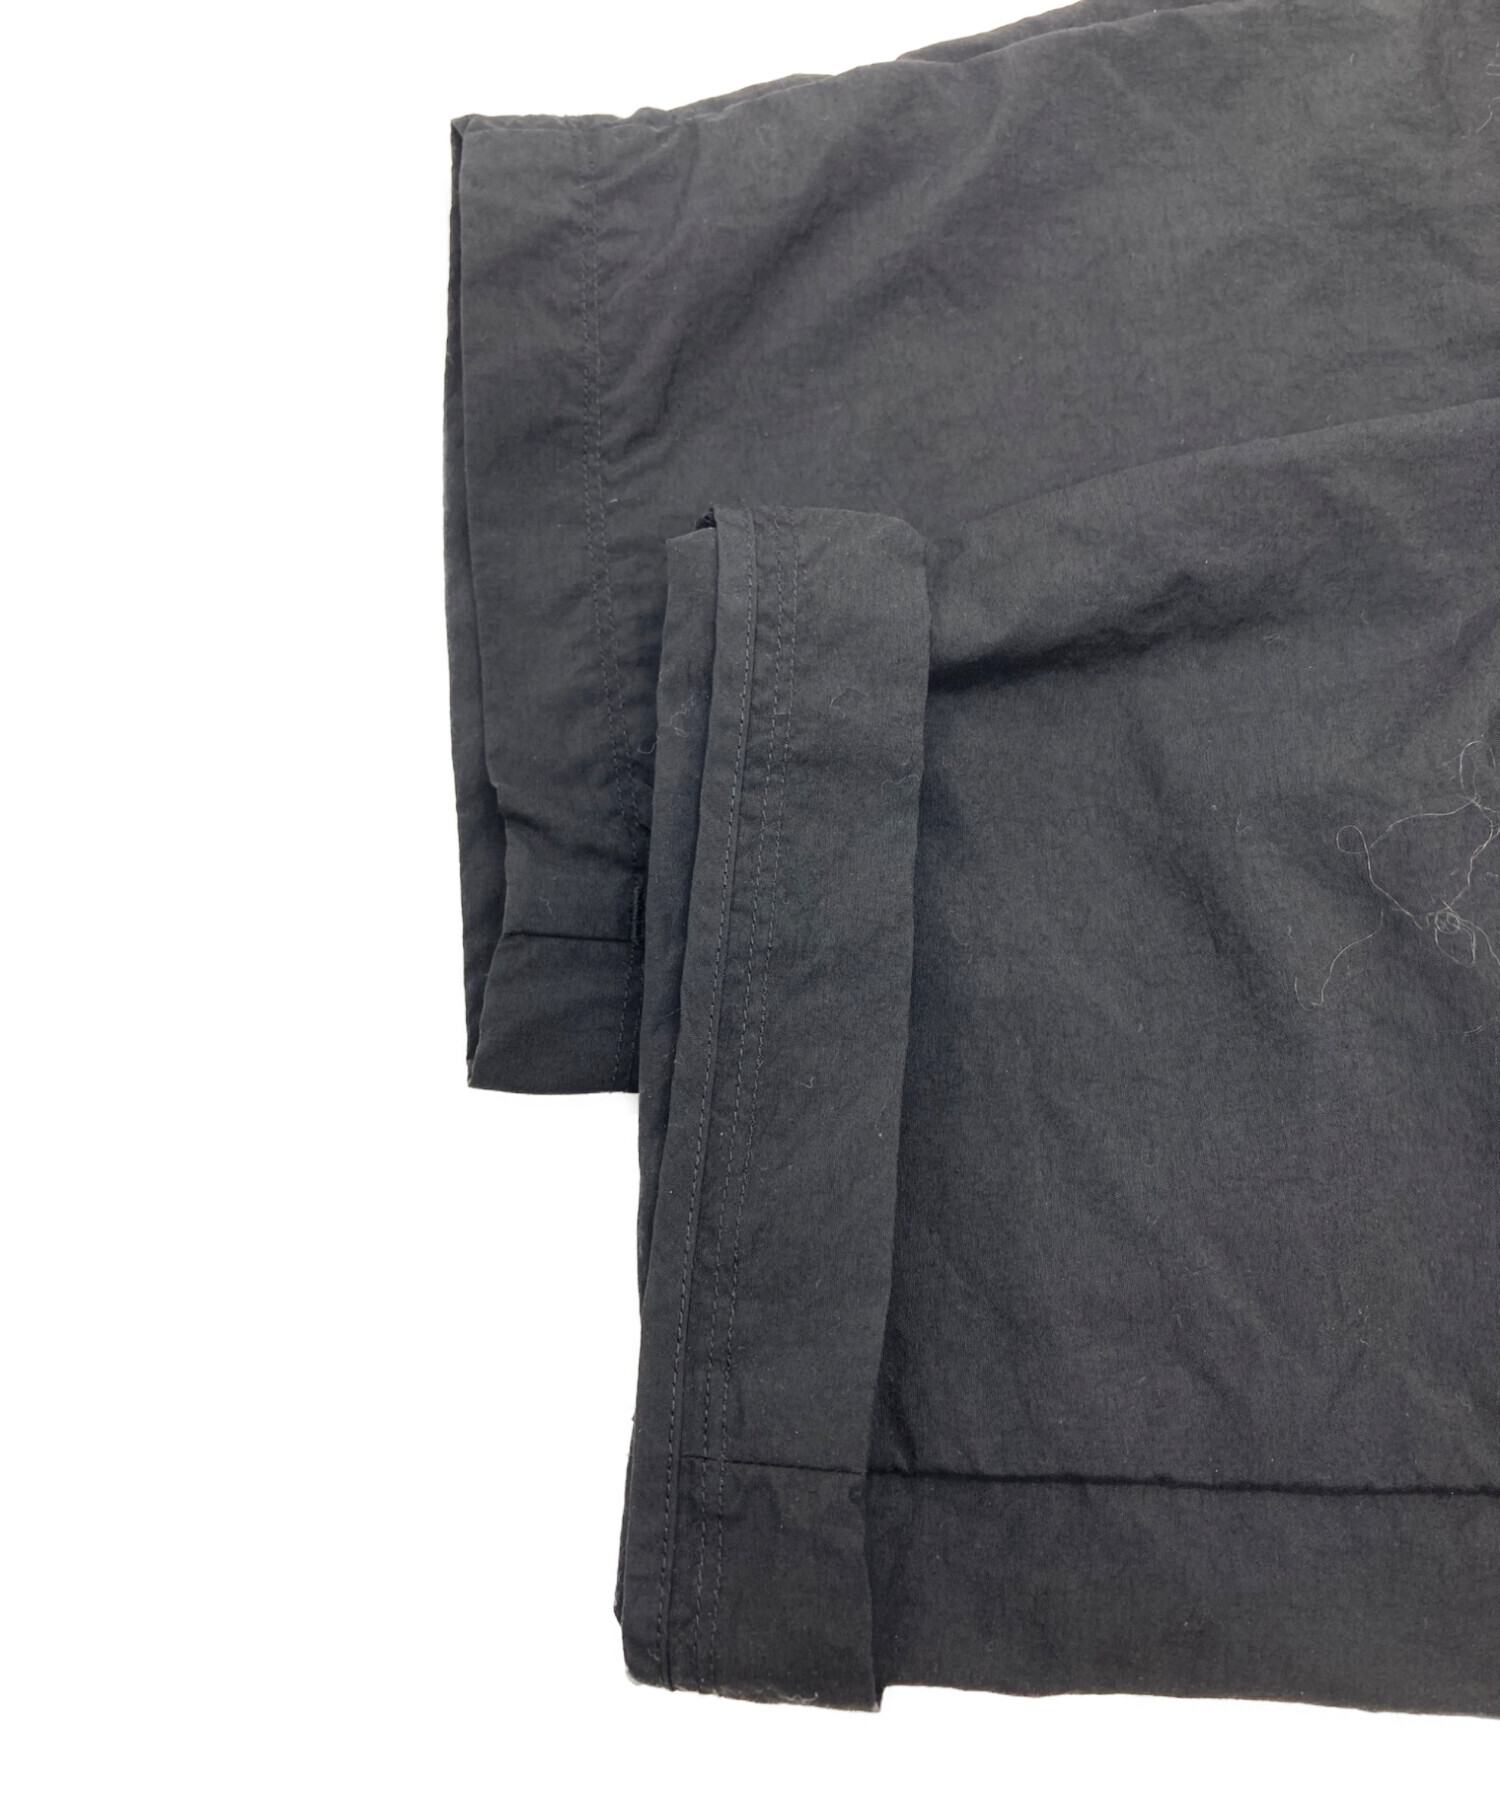 teatora (テアトラ) ウォレットパンツパッカブル WALLET PANTS PACKABLE ブラック サイズ:4